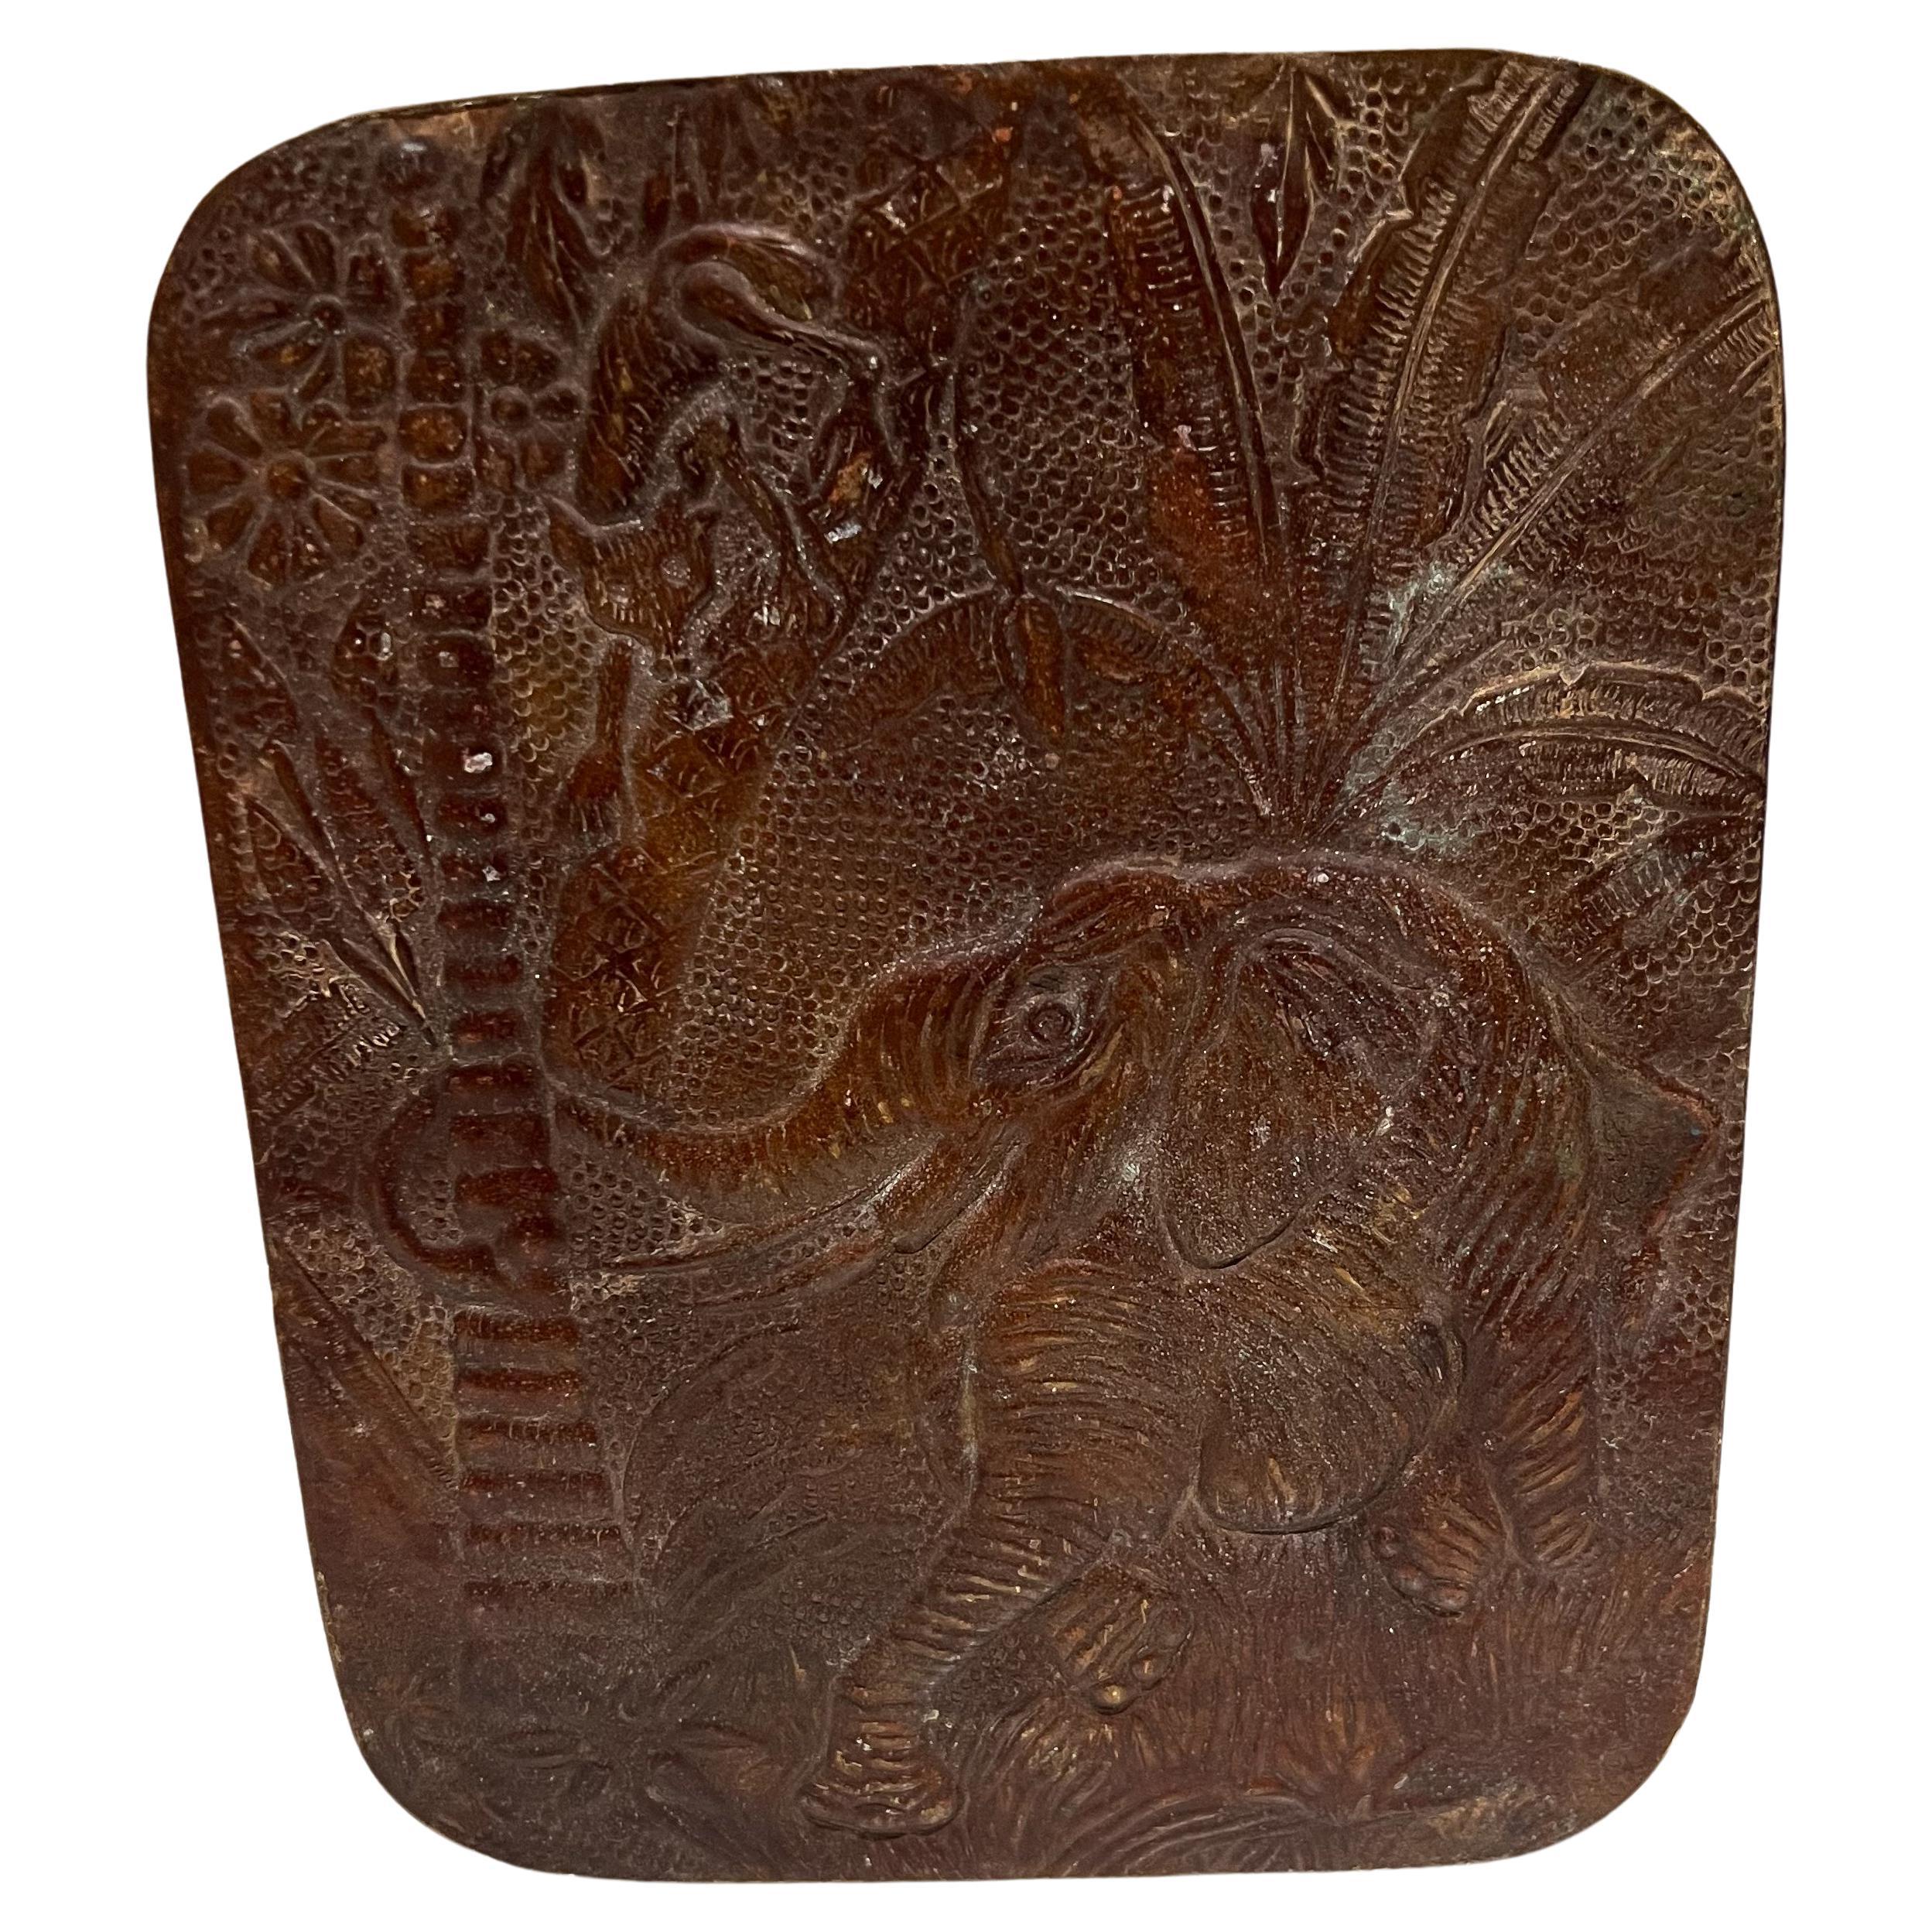 Boîte d'éléphant indienne en cuivre patiné embossé, faite à la main